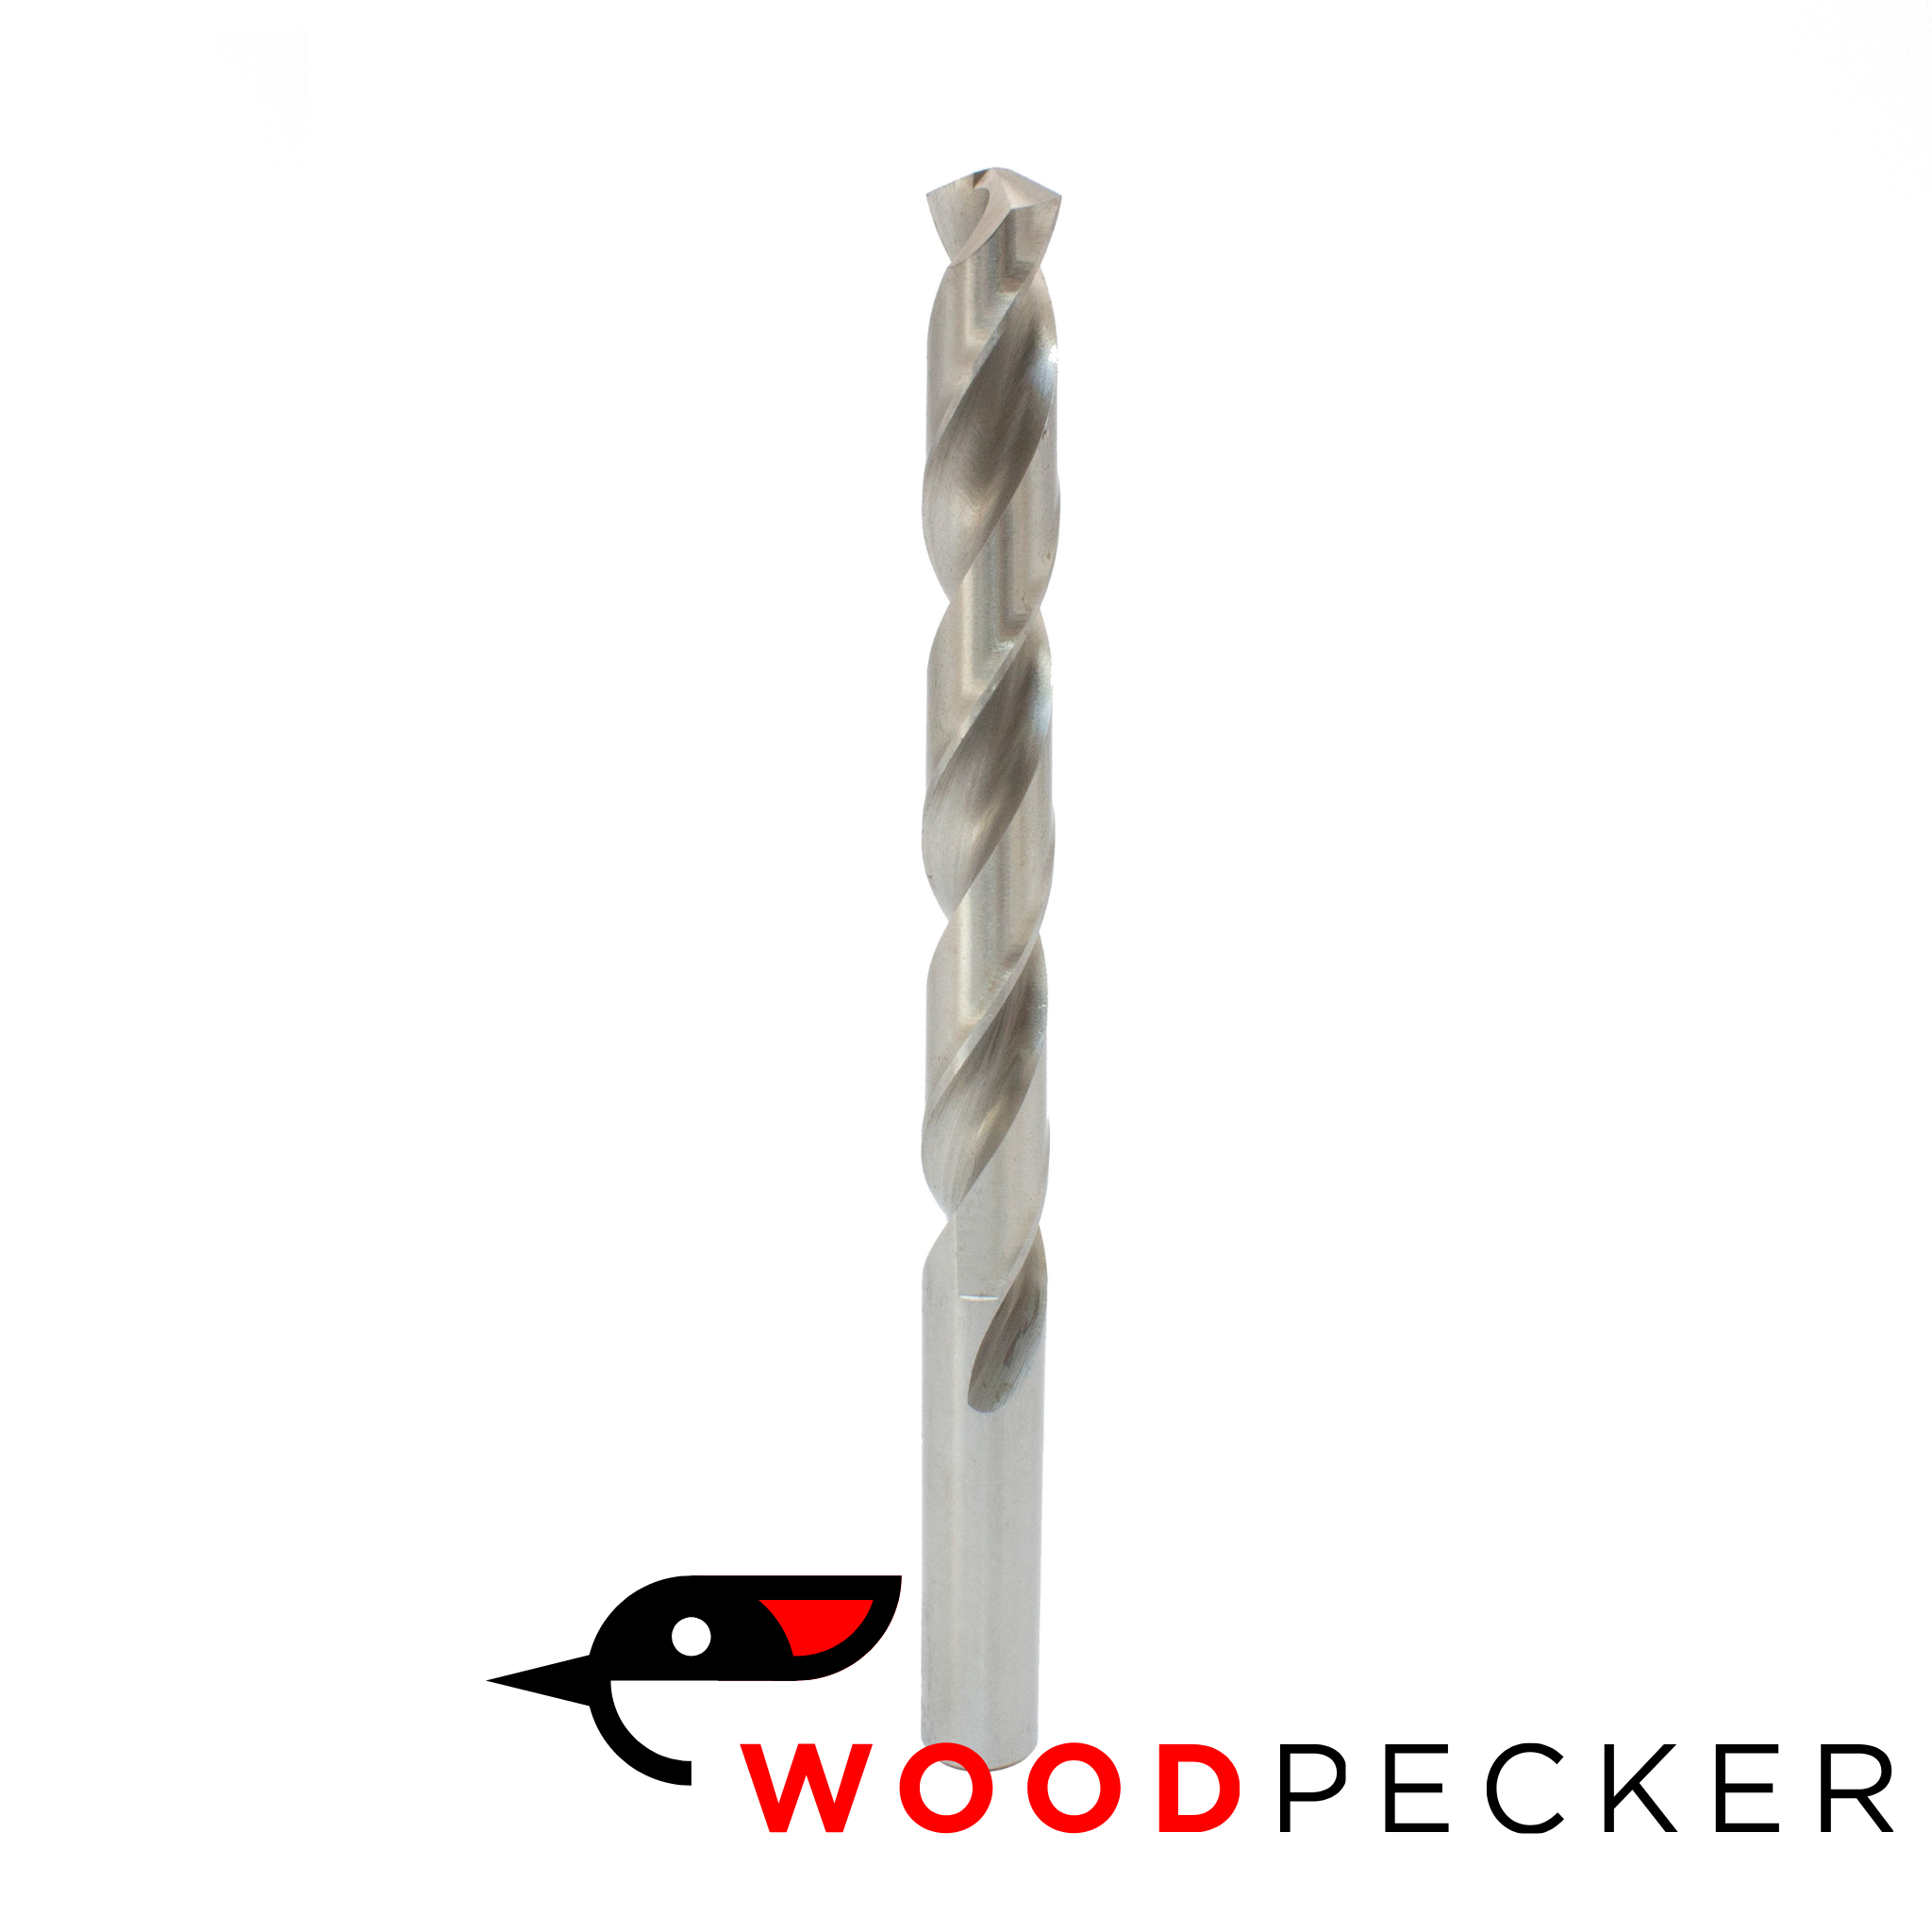 Woodpecker - HSS Jobber Drills | Product